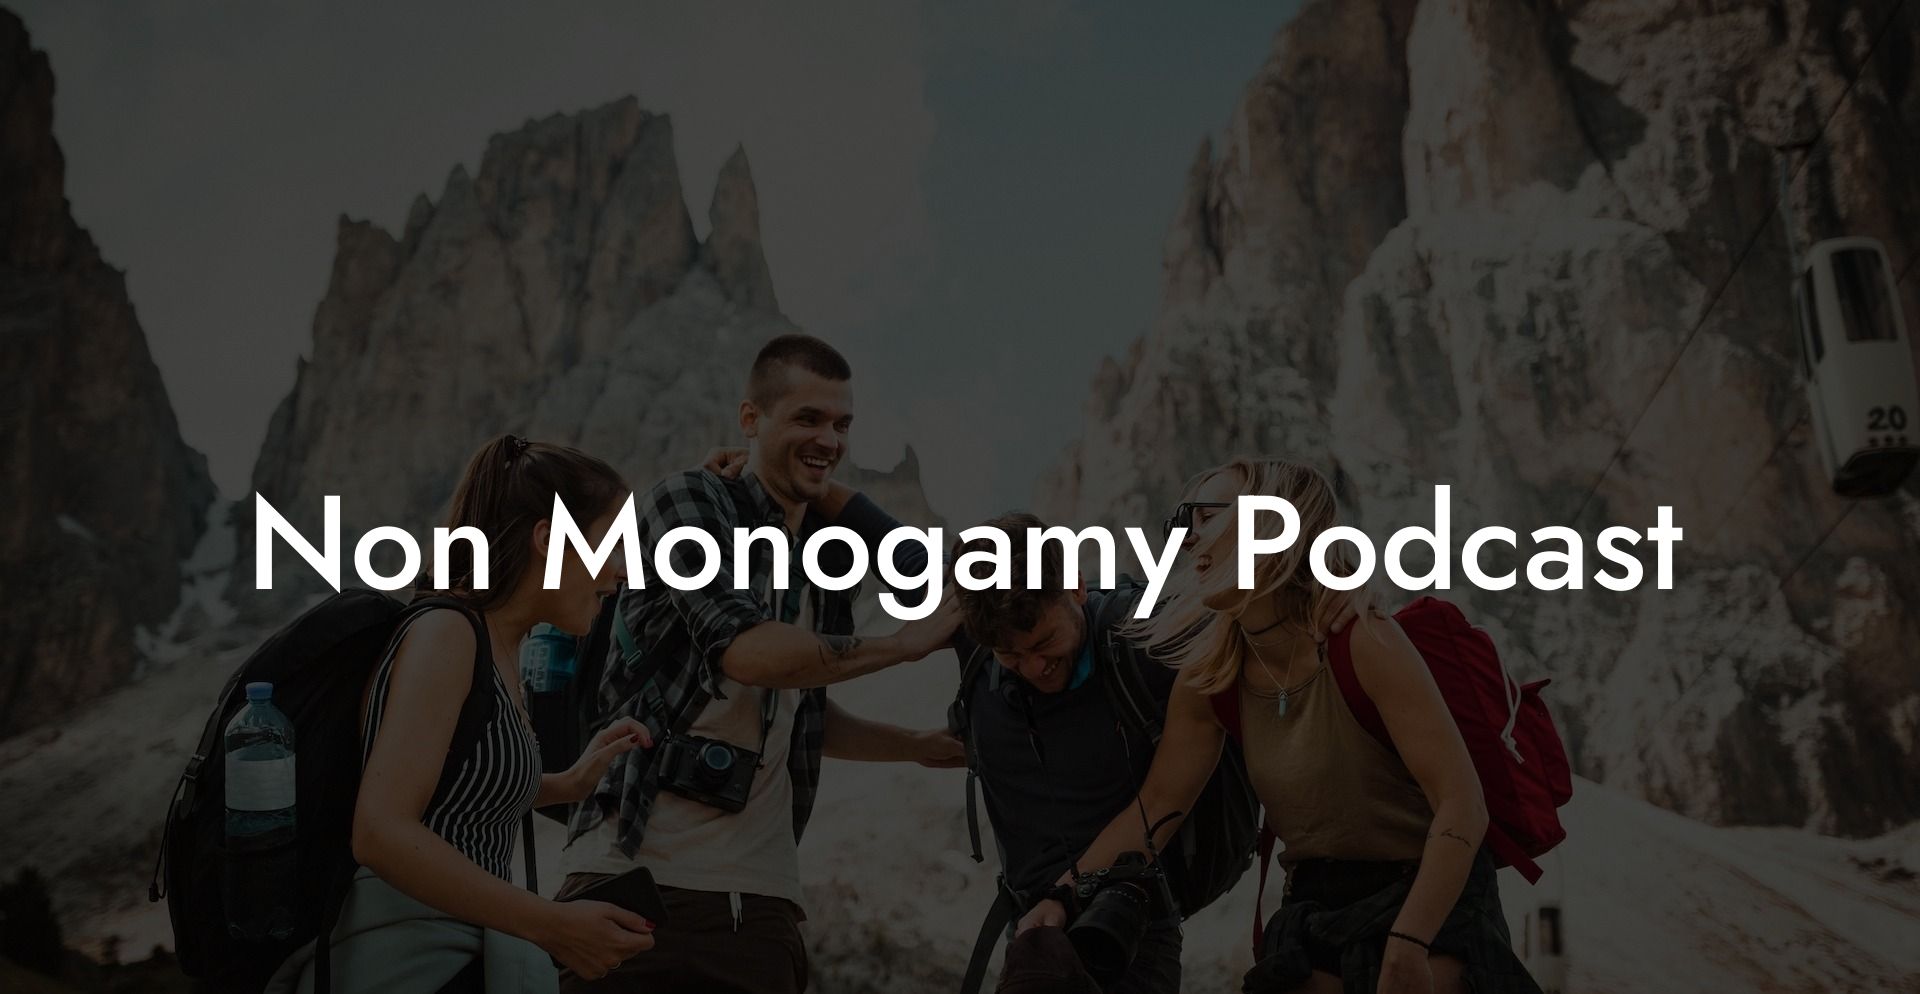 Non Monogamy Podcast